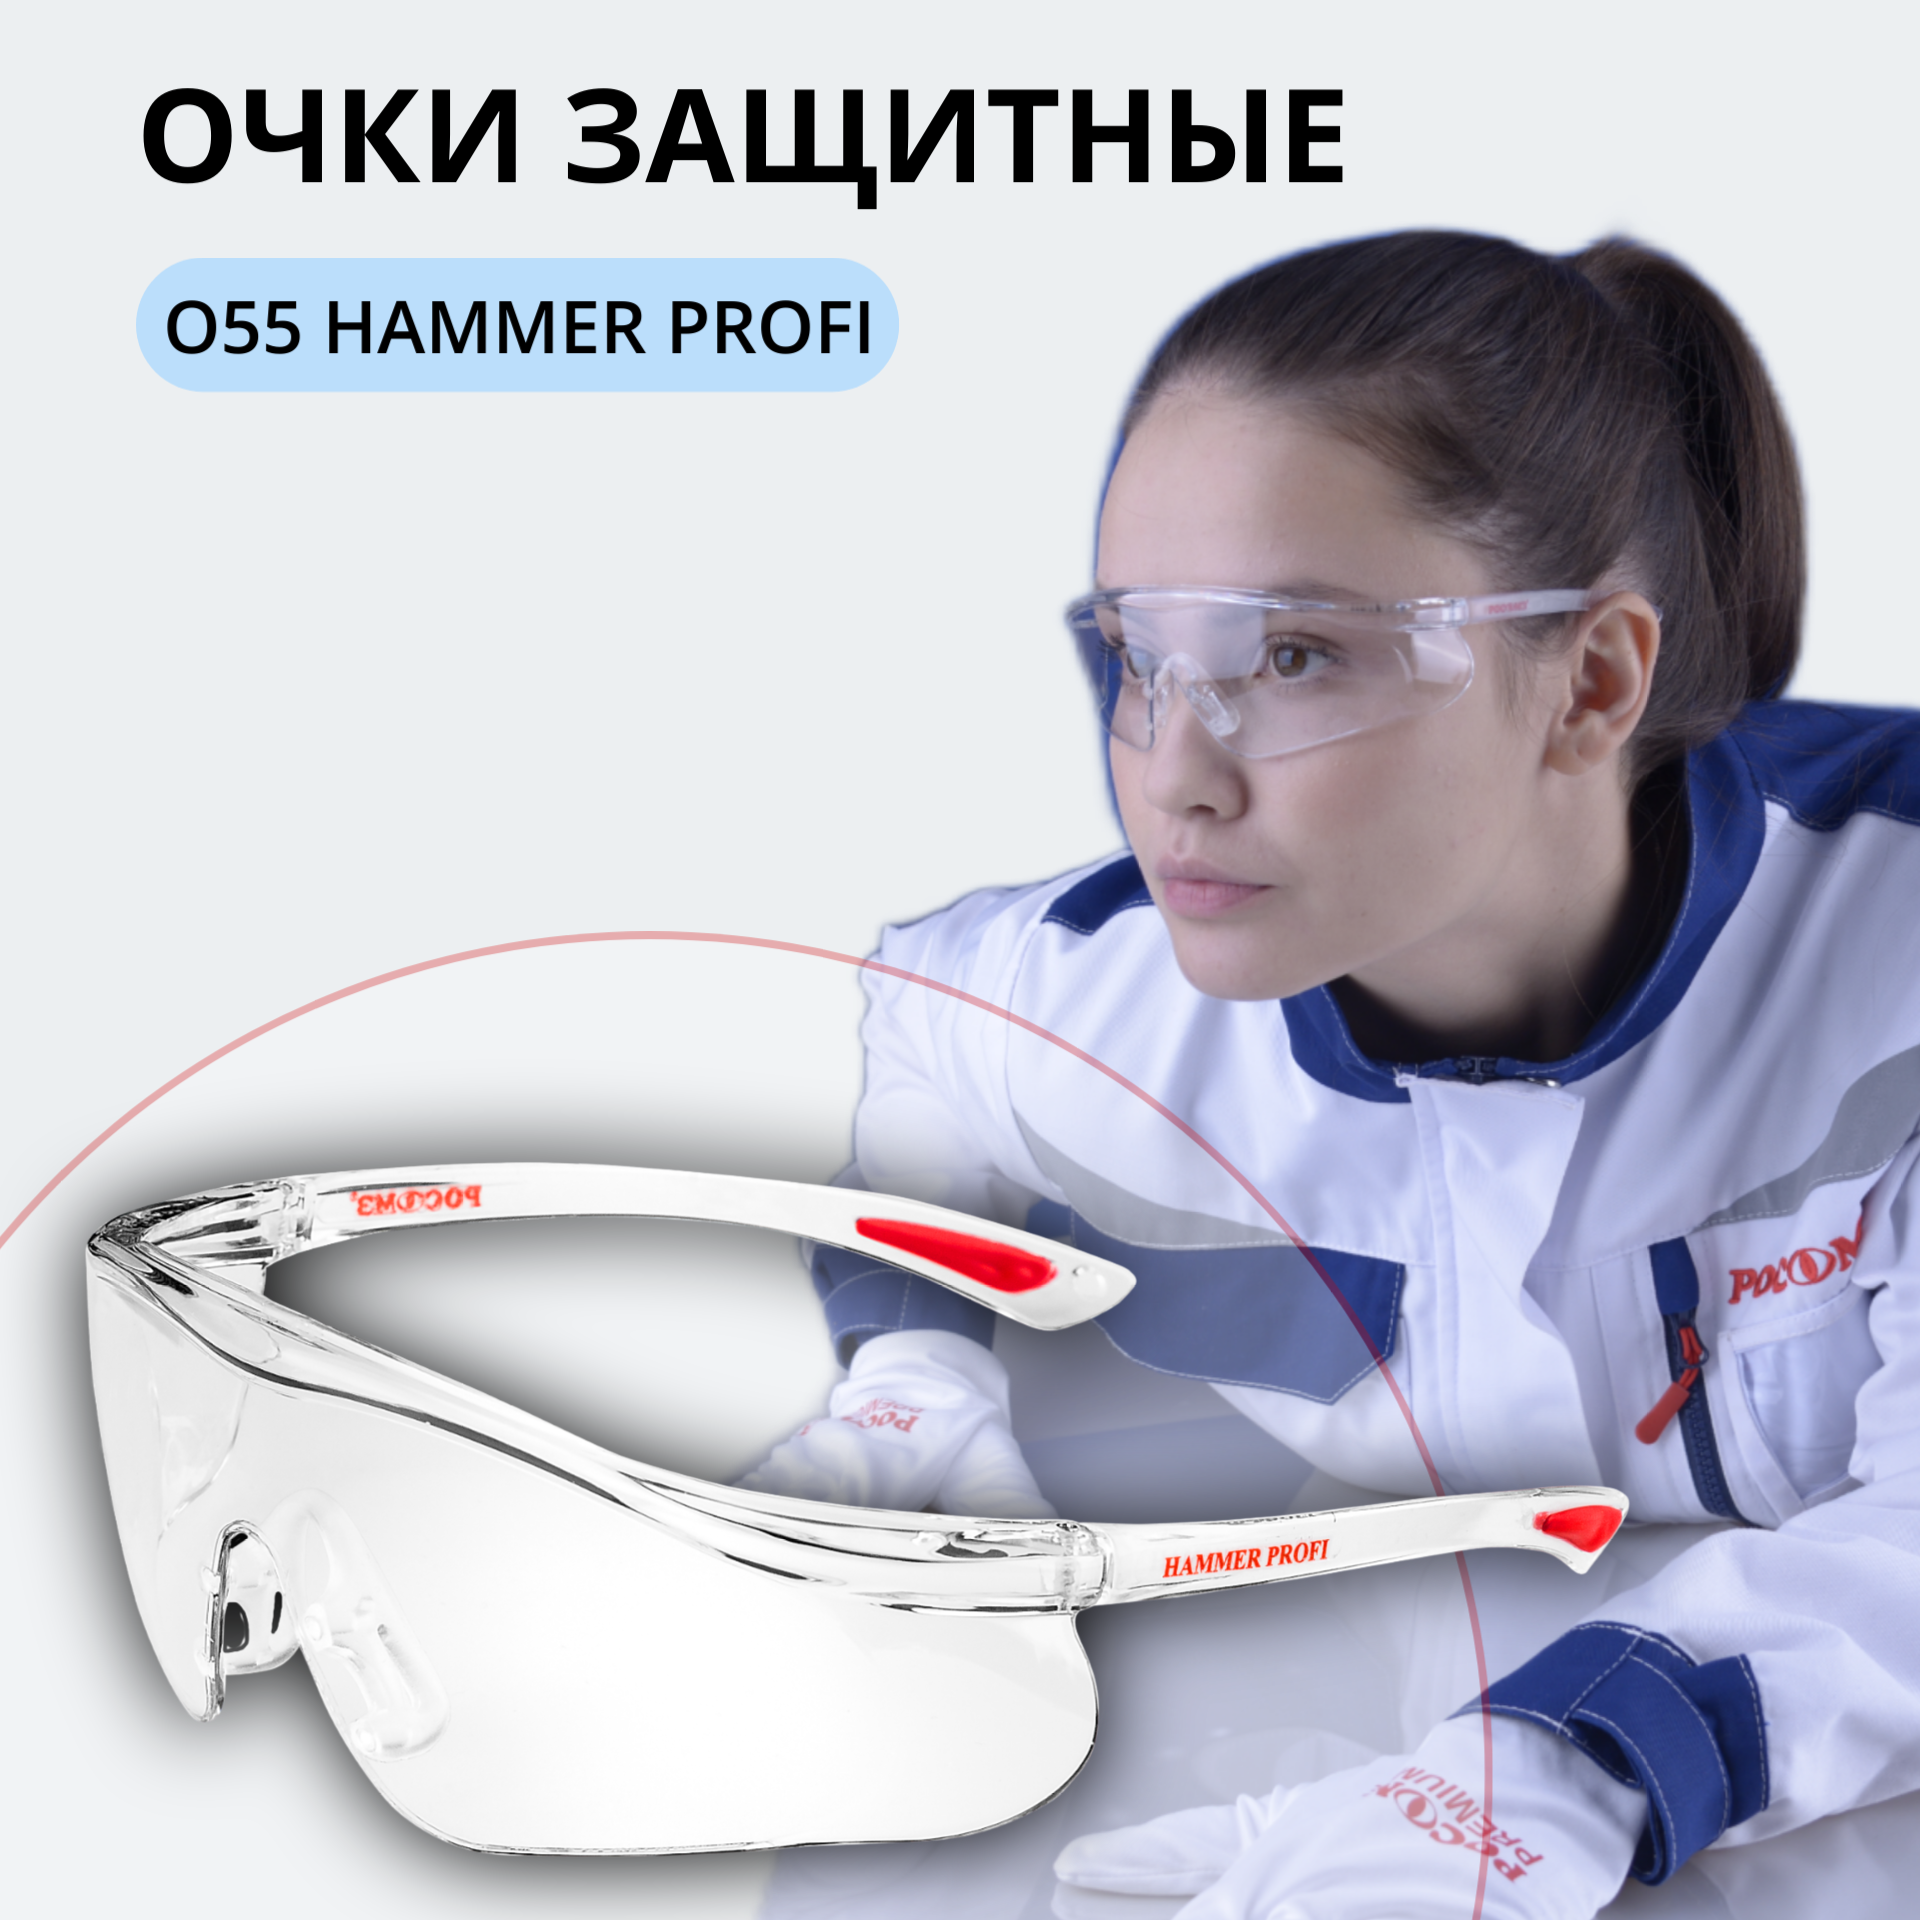 Очки защитные открытые РОСОМЗ О55 Hammer Profi super, прозрачные, незапотевающее покрытие, устойчивы к химическим веществам, поликарбонат, 15530